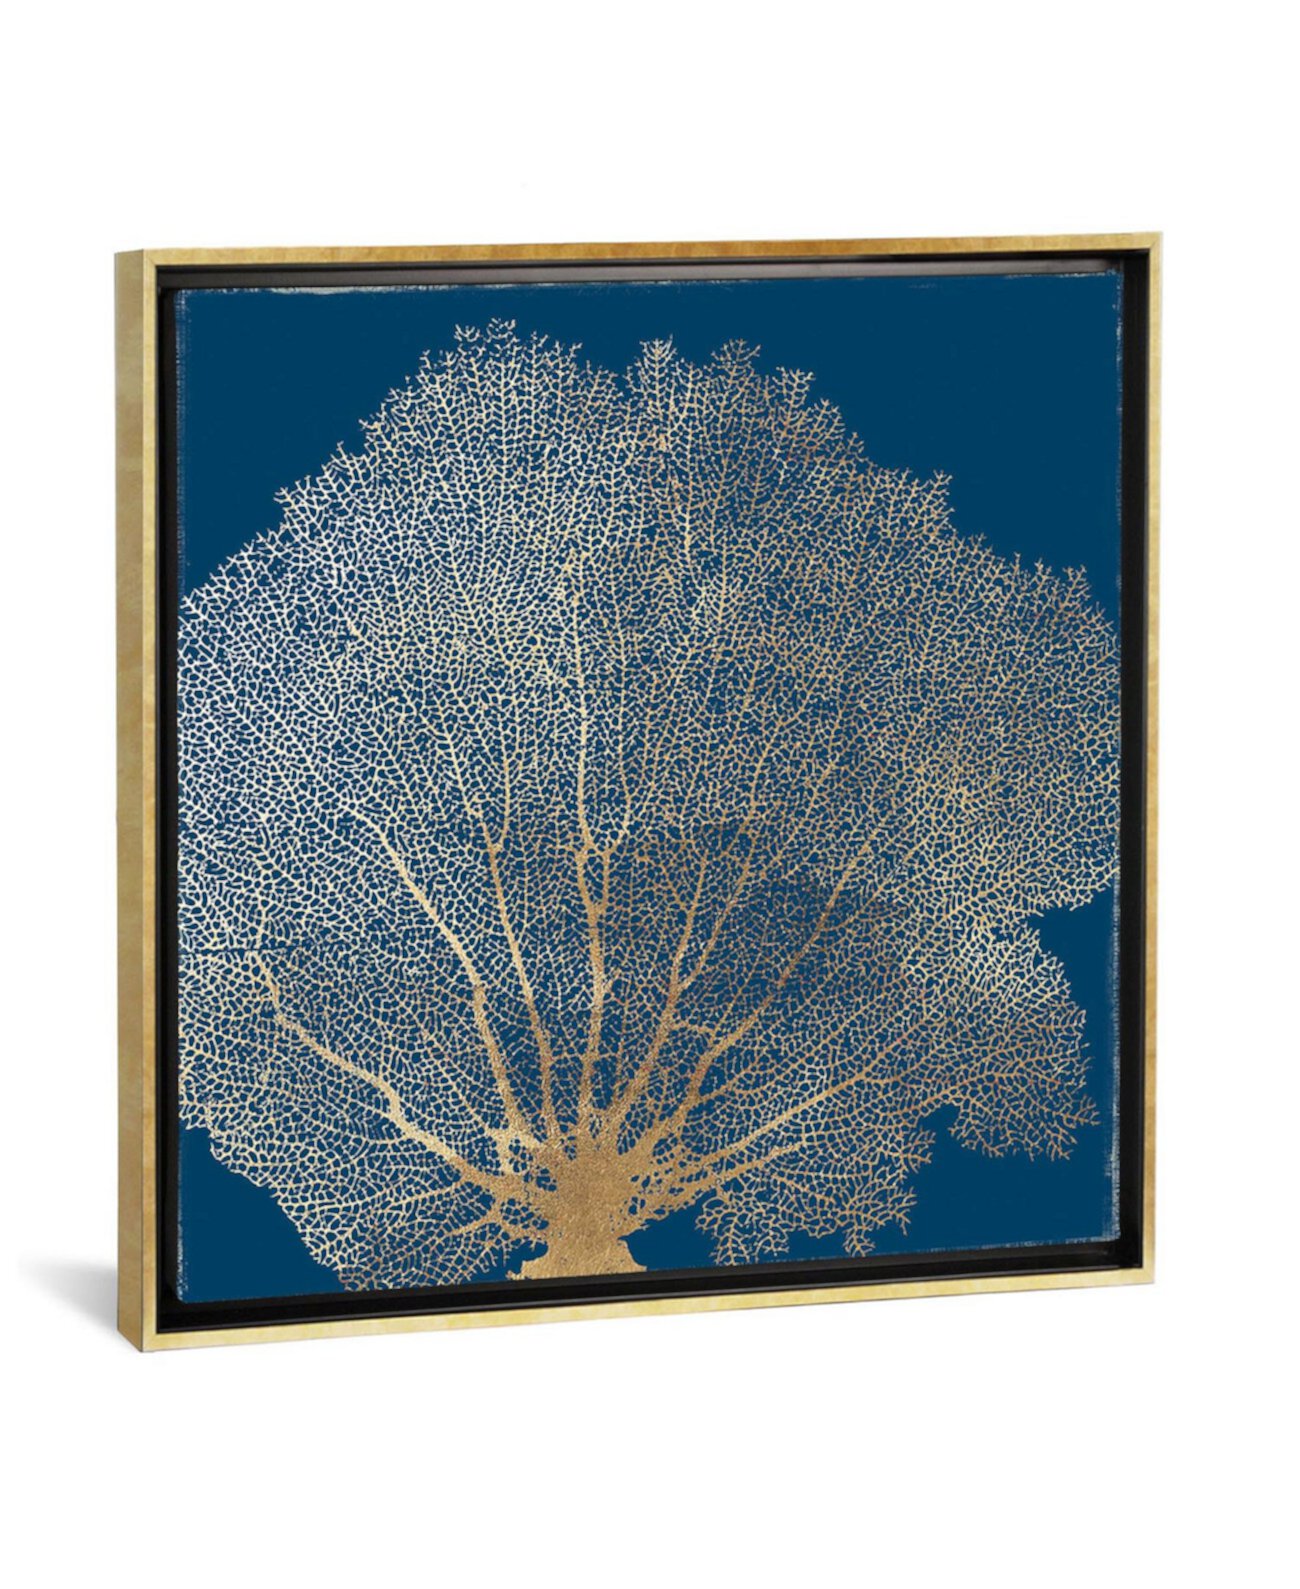 Золотой коралл III от Эйми Уилсон, принт на холсте, завернутый в галерею - 18 дюймов x 18 дюймов x 0,75 дюйма ICanvas